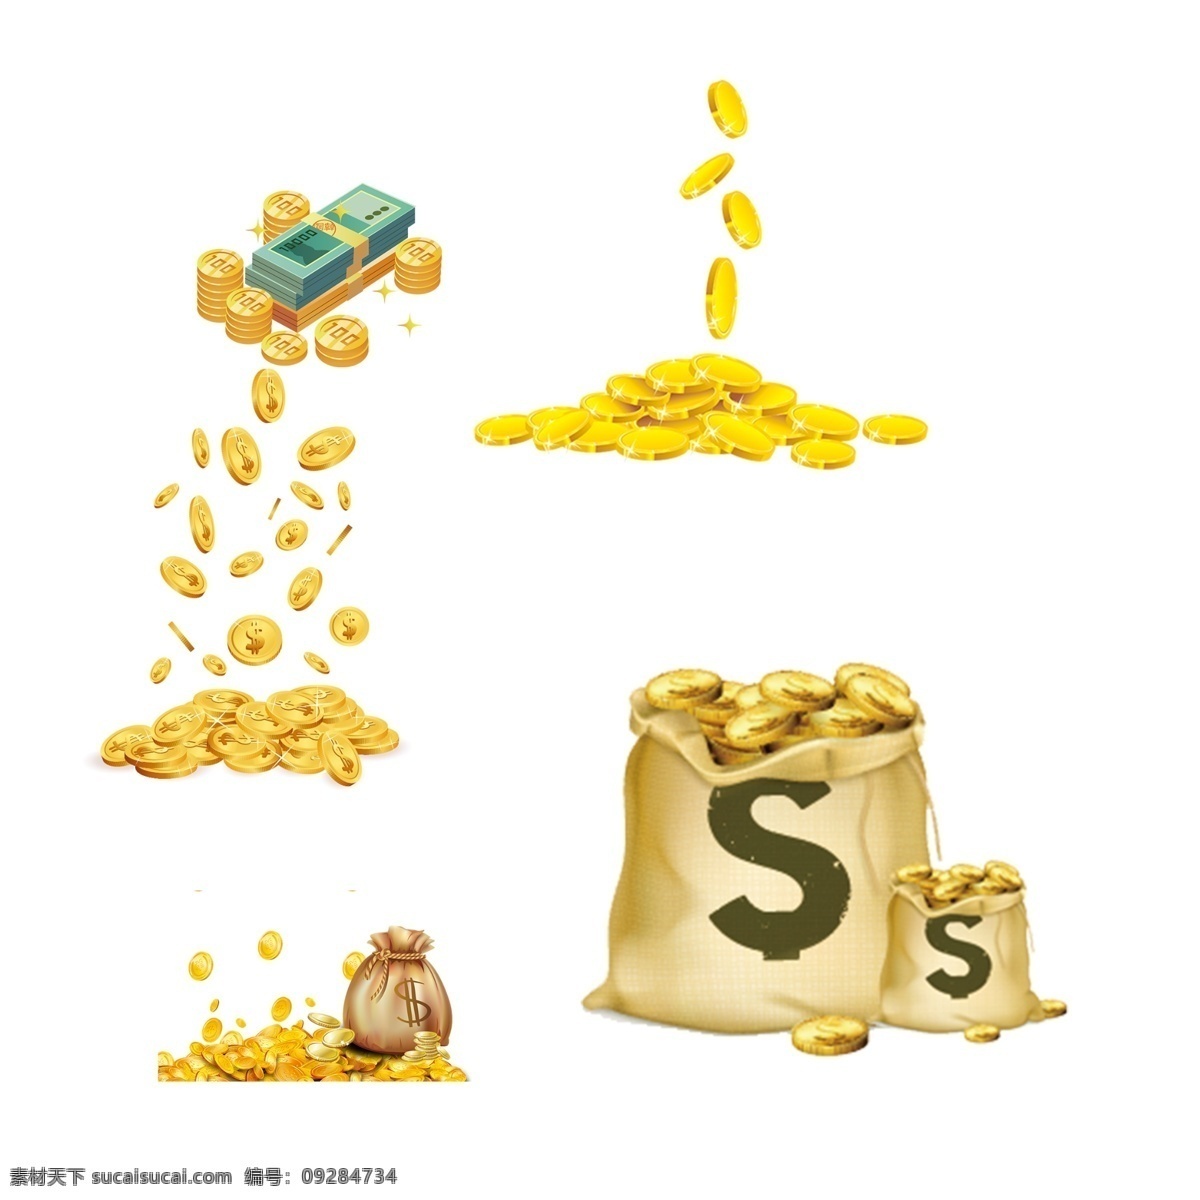 金币图片 金币 黄金 美金 钱币 投资理财 财富金融 货币 商务金融